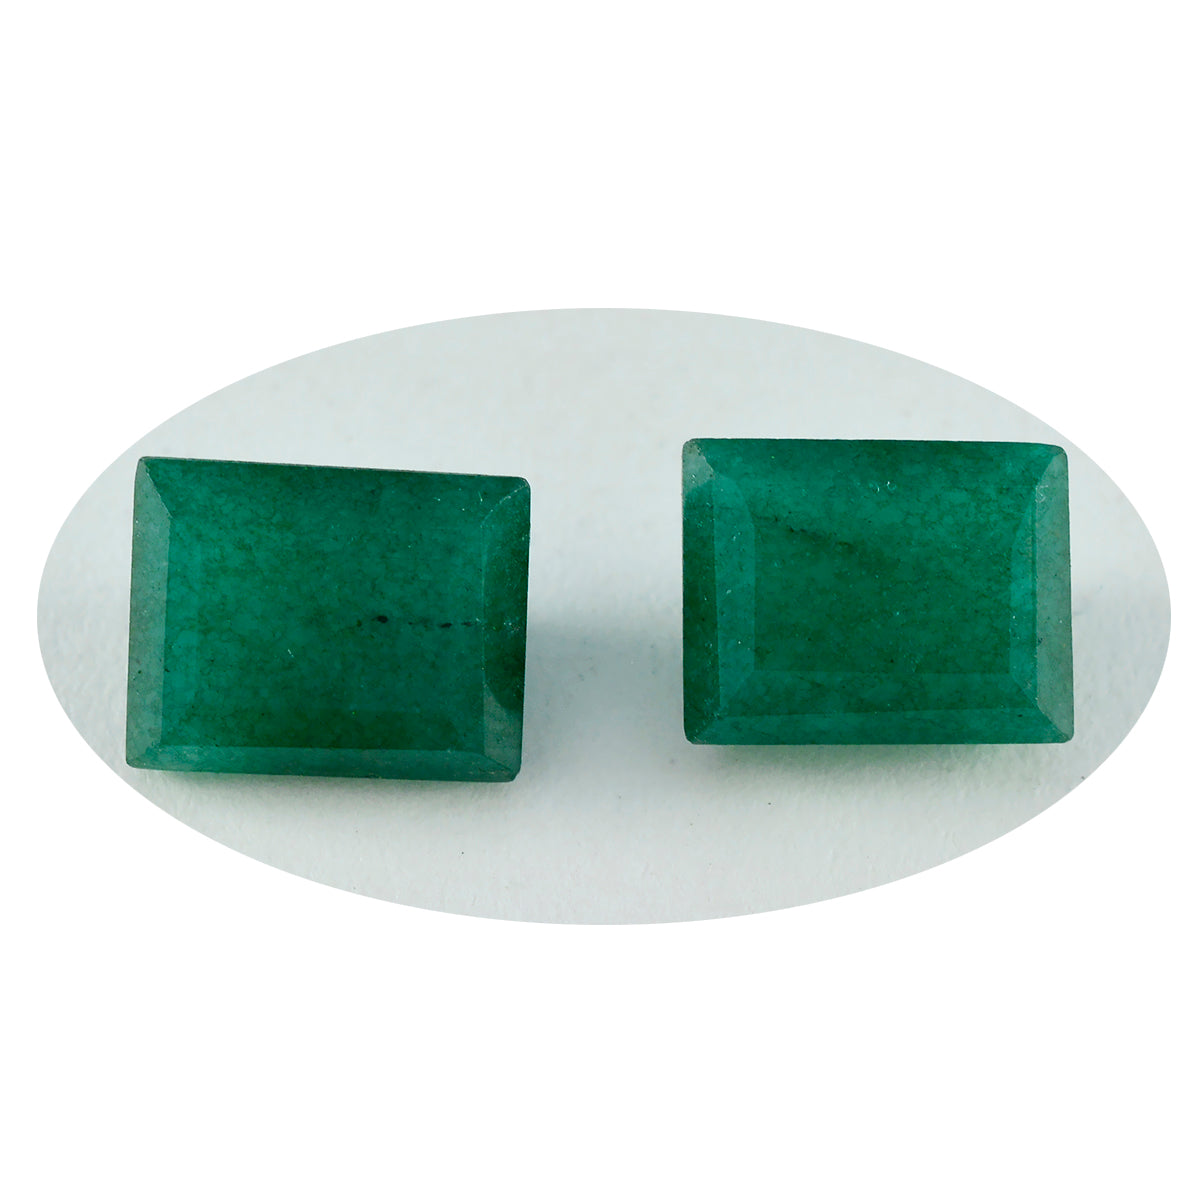 riyogems 1 st naturgrön jaspis fasetterad 12x16 mm oktagonform superb kvalitet pärla